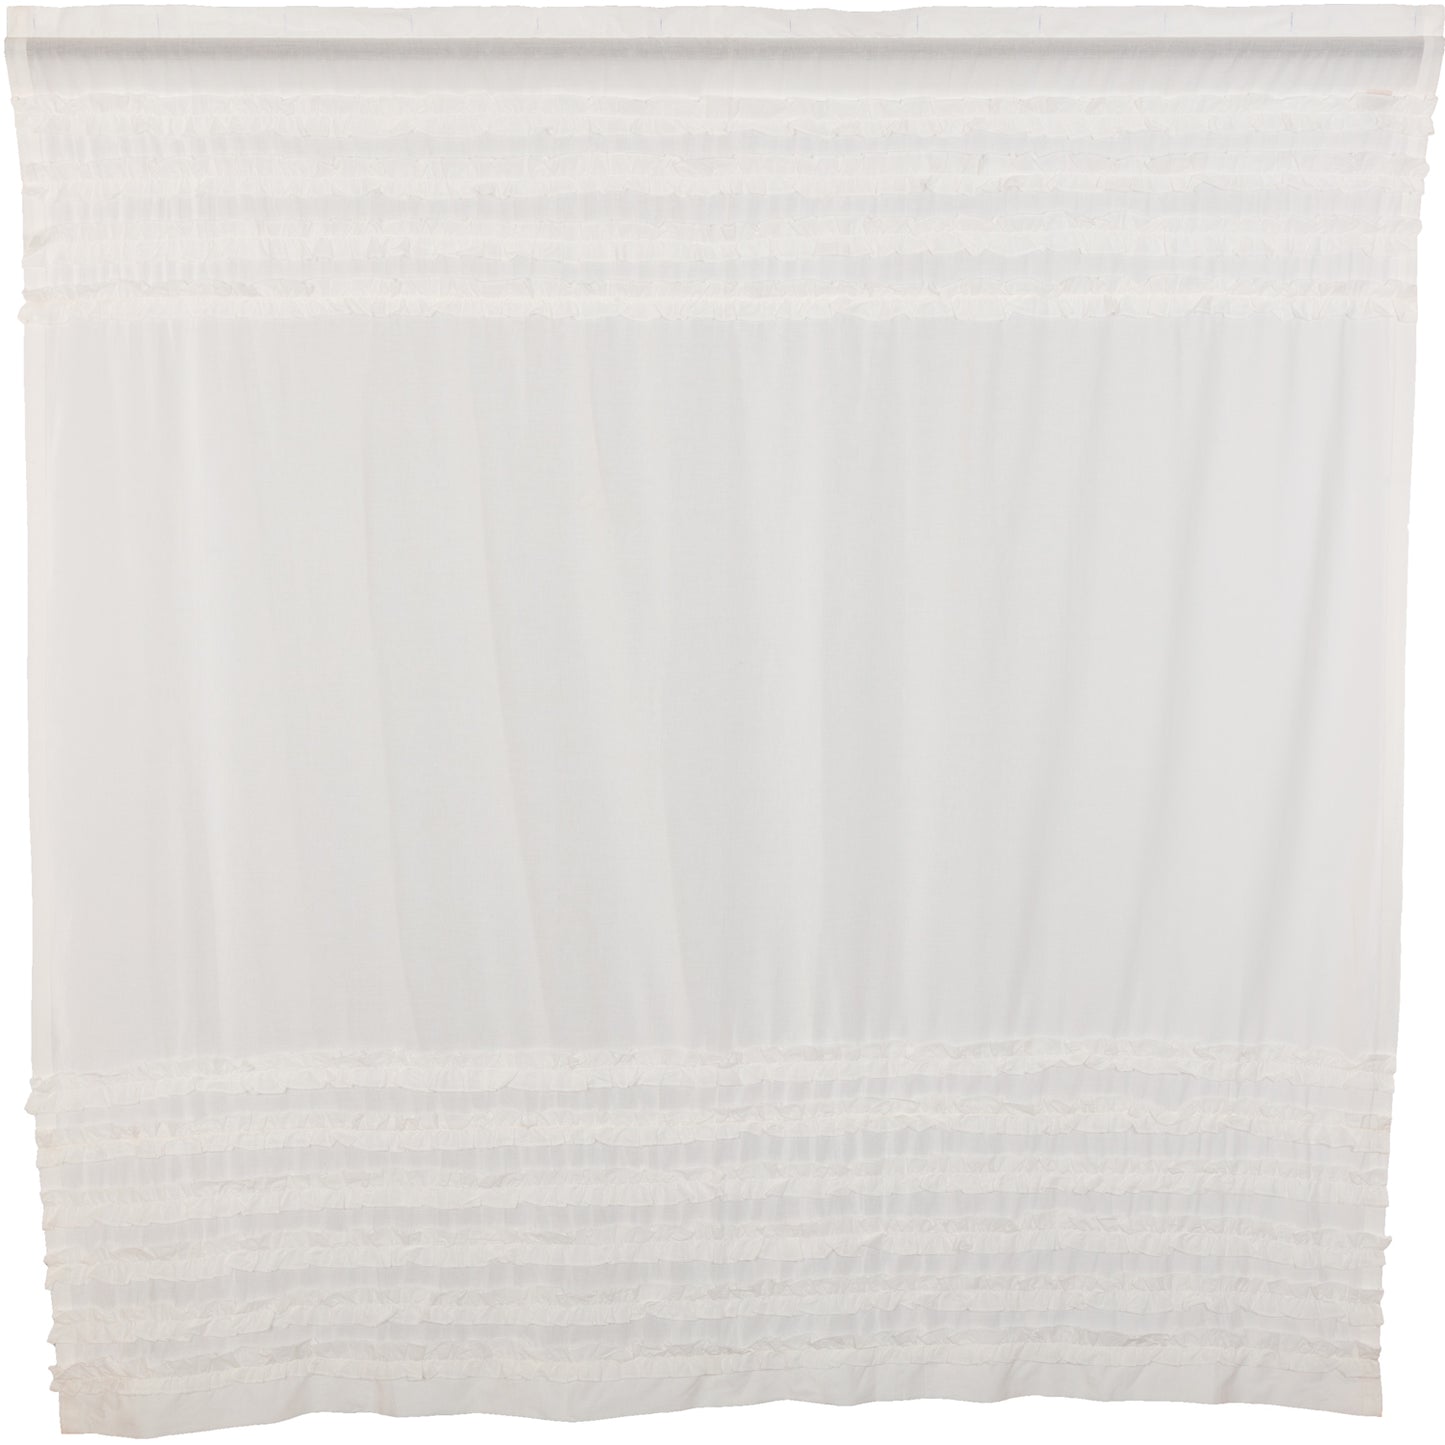 51601-White-Ruffled-Sheer-Petticoat-Shower-Curtain-72x72-image-6